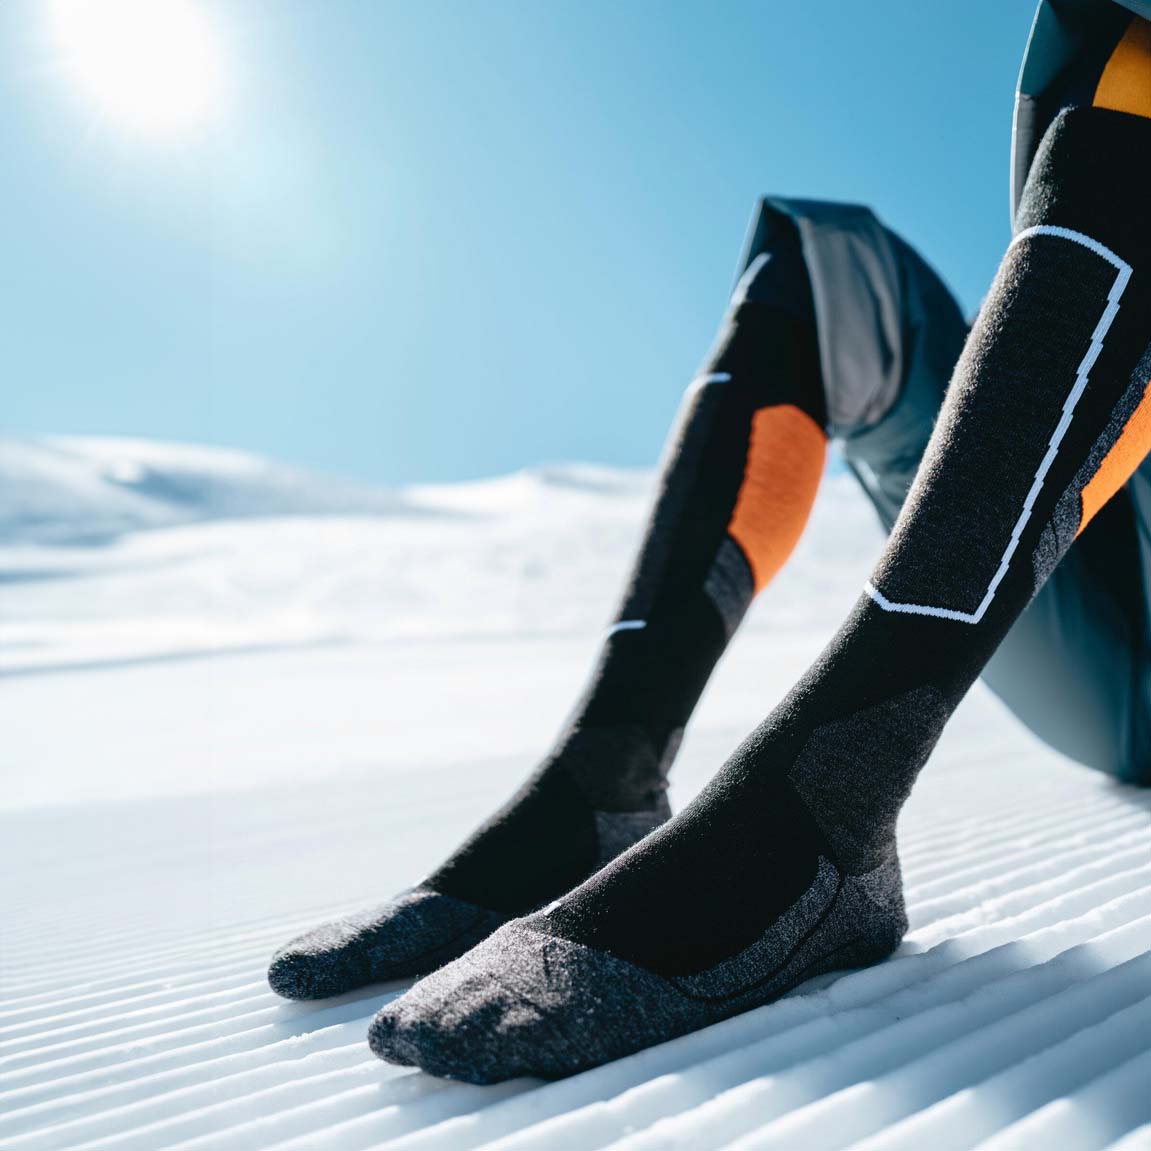 Falke SK4 Advanced Wool Ski Socks